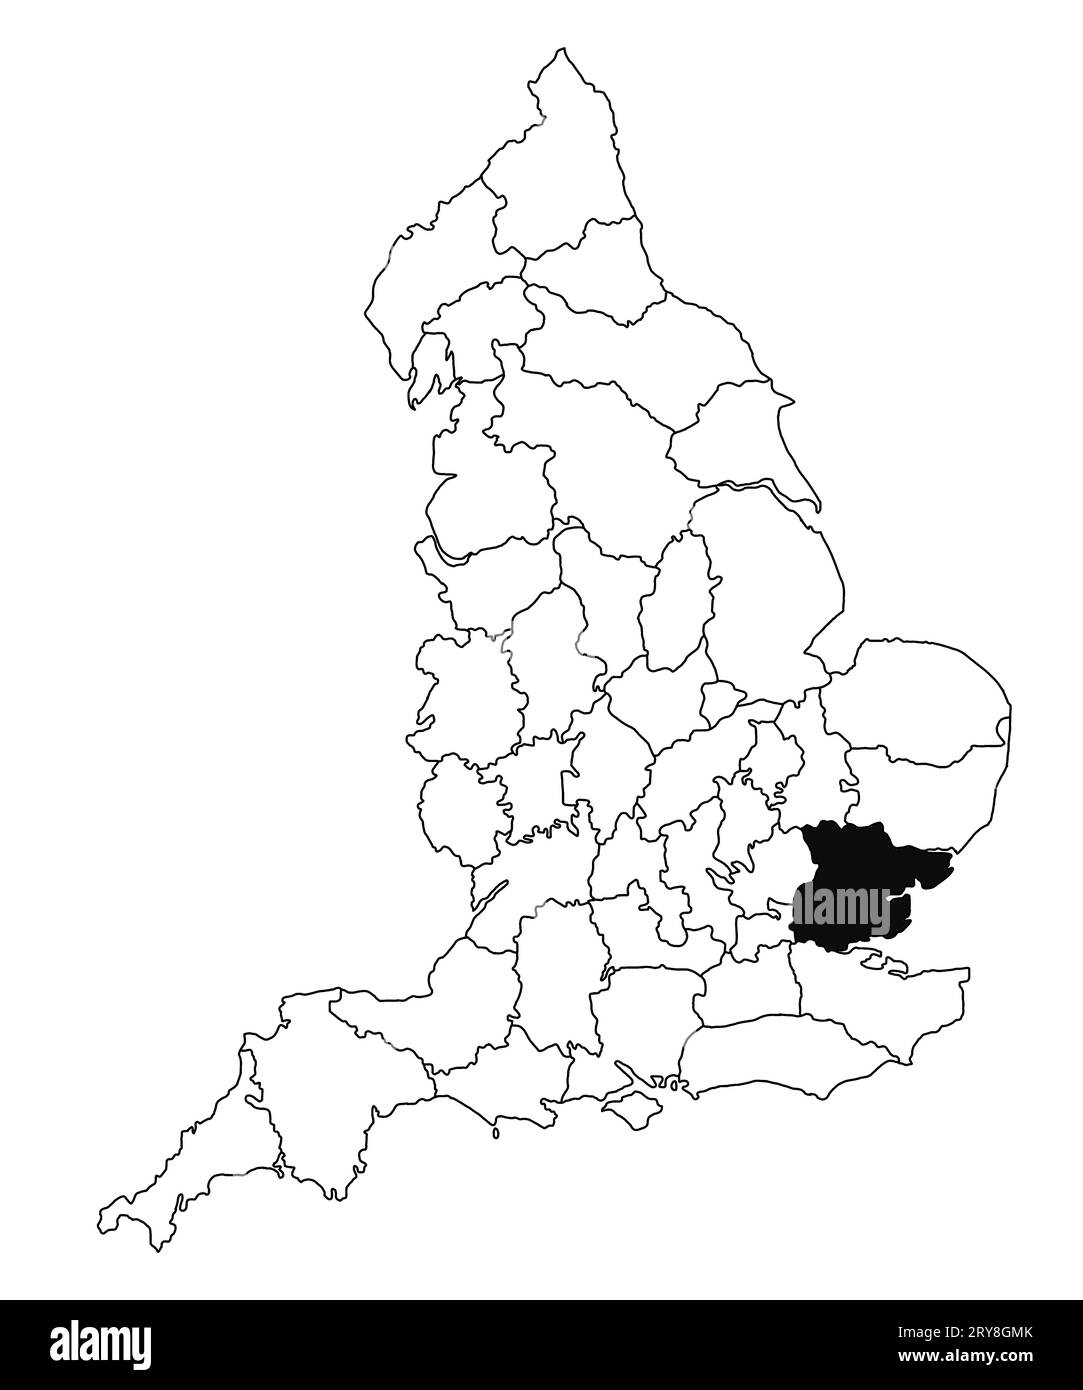 Karte von Essex County in England auf weißem Hintergrund. Single County Karte, schwarz hervorgehoben auf der englischen Verwaltungskarte. Vereinigtes Königreich, Brit Stockfoto